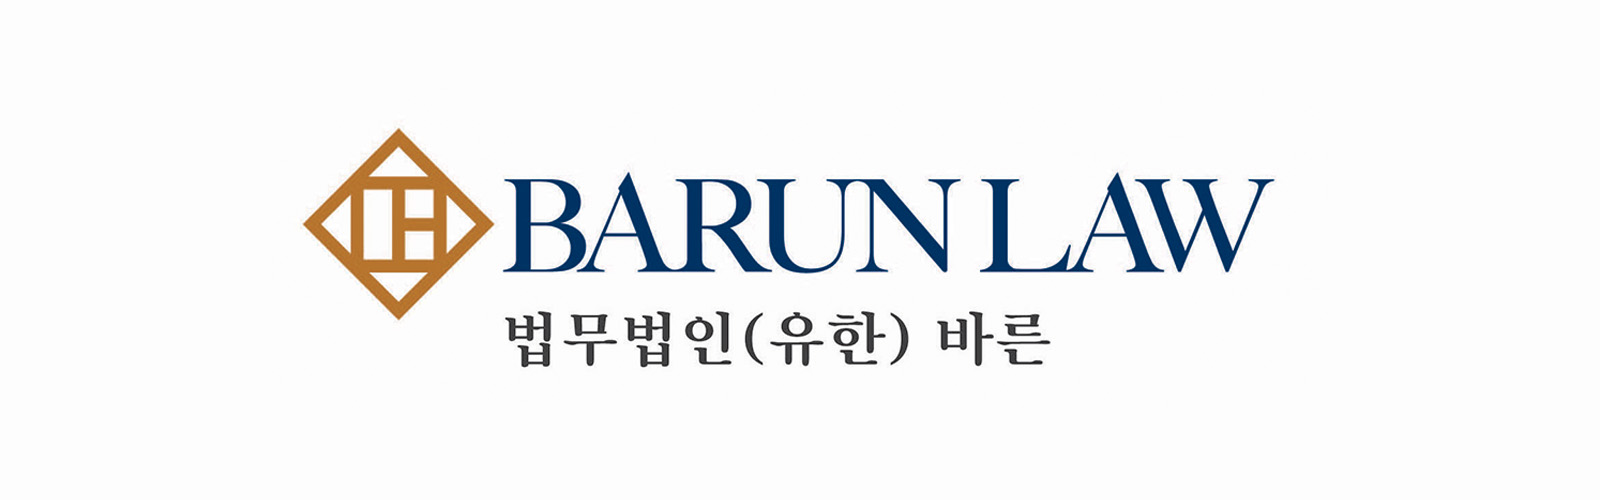 BarunLaw_logo500_m